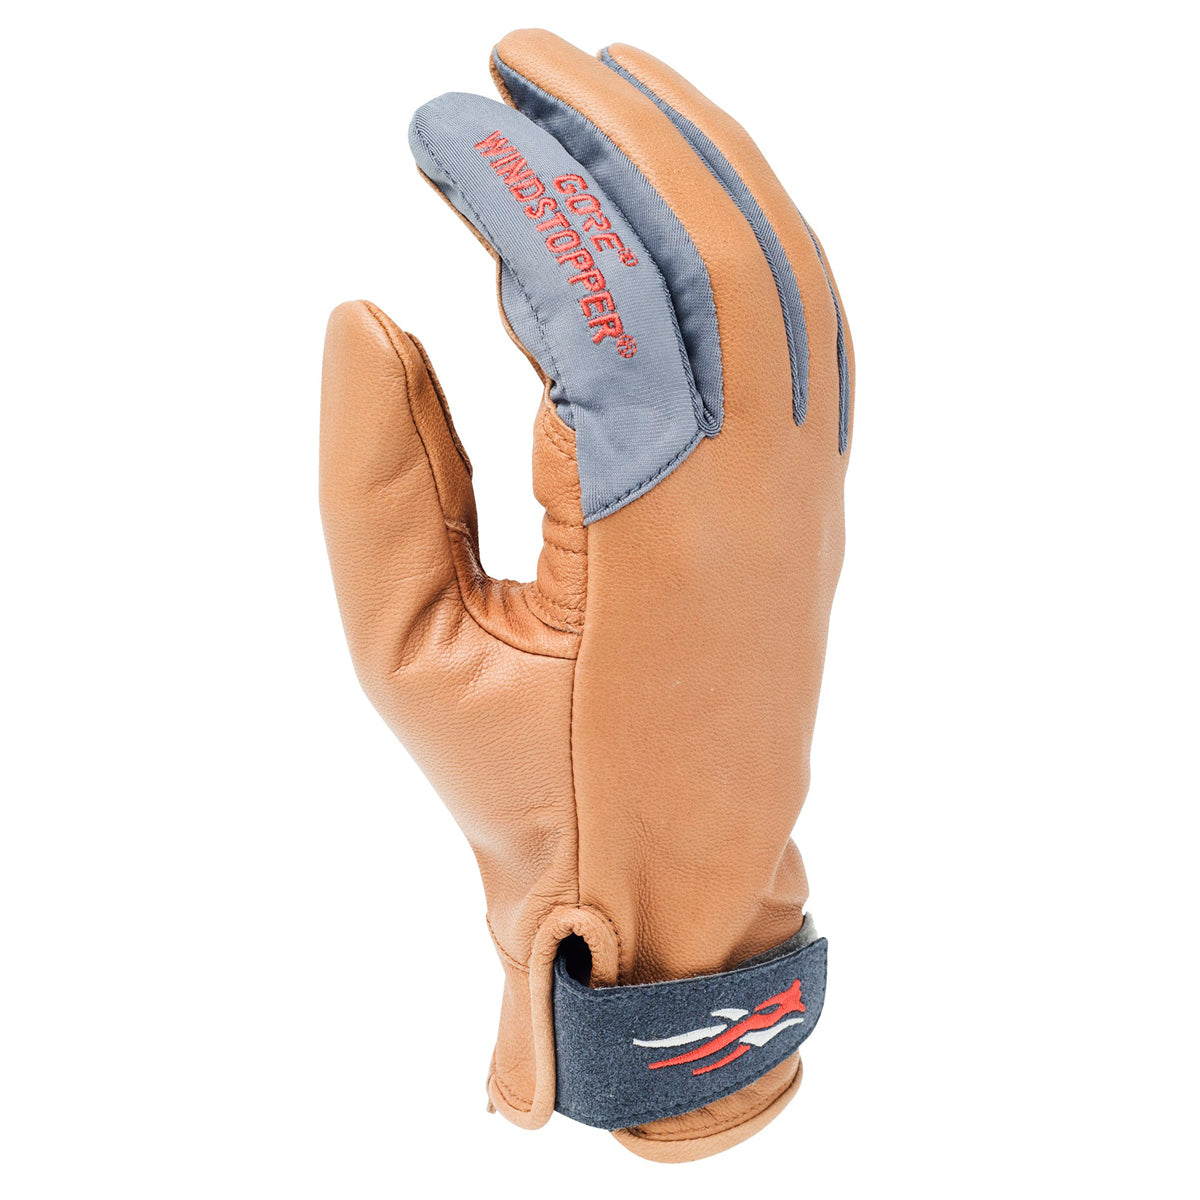 Sitka Gunner WS Glove in Sitka Gunner WS Glove by Sitka | Apparel - goHUNT Shop by GOHUNT | Sitka - GOHUNT Shop